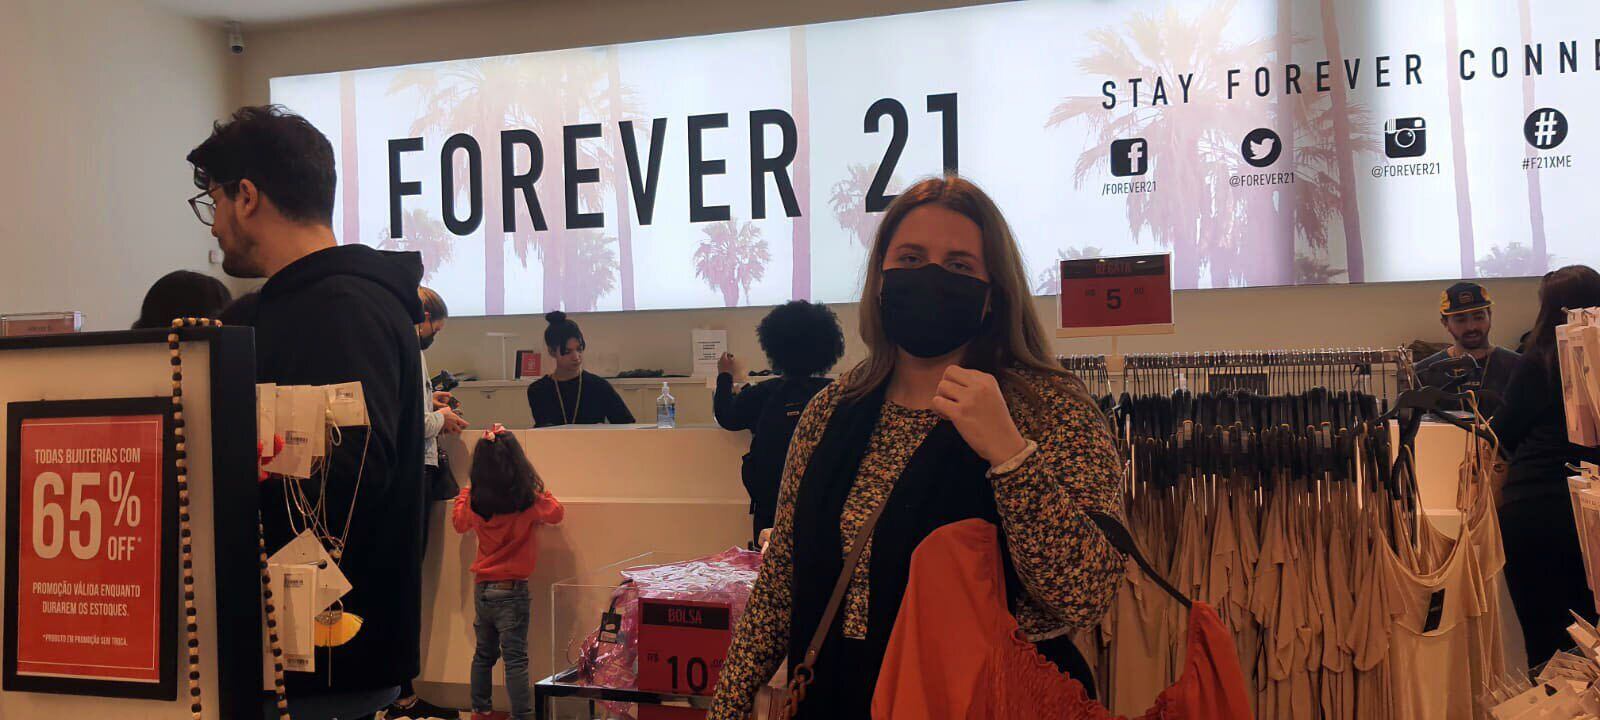 Forever 21 deve fechar todas as lojas no Brasil até domingo - Época  Negócios